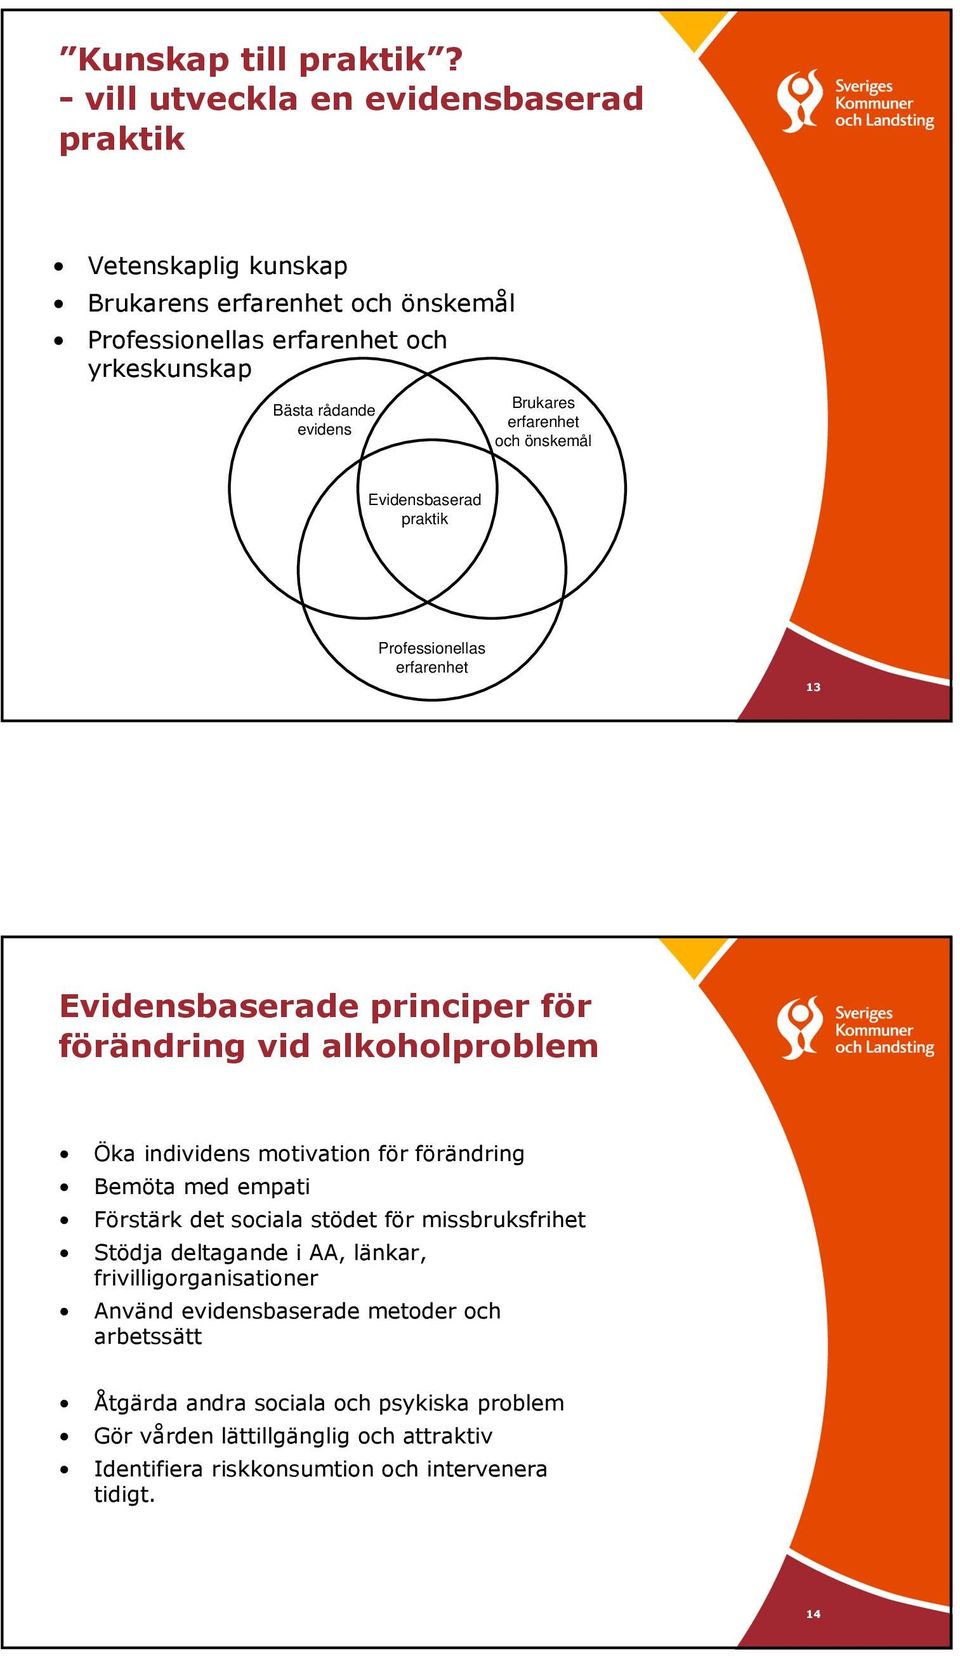 Brukares erfarenhet och önskemål Evidensbaserad praktik Professionellas erfarenhet 13 Evidensbaserade principer för förändring vid alkoholproblem Öka individens